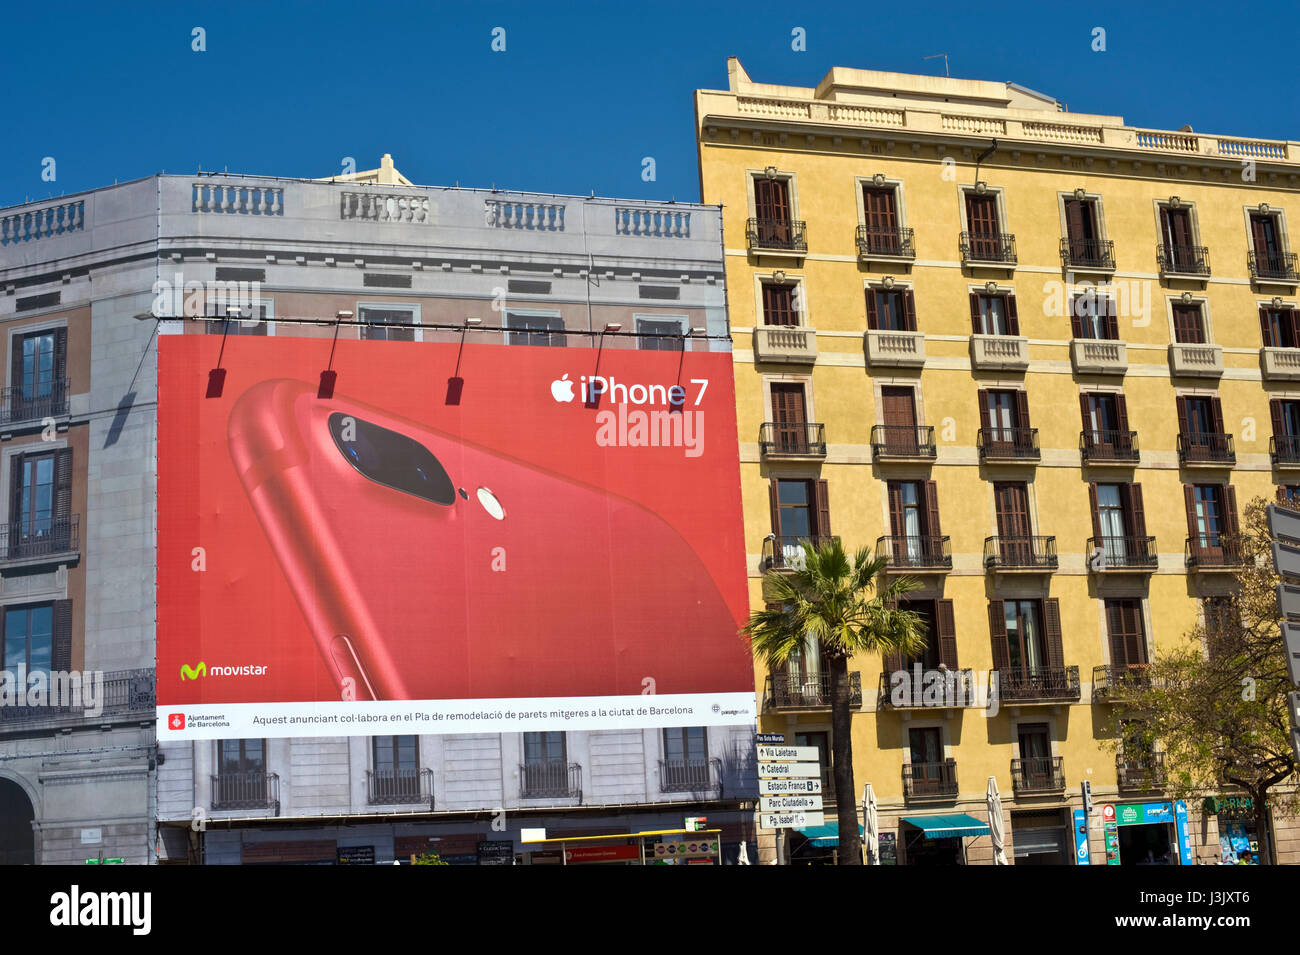 Tabellone gigante per Apple iphone 7 a Barcellona Spagna ES UE Foto stock -  Alamy